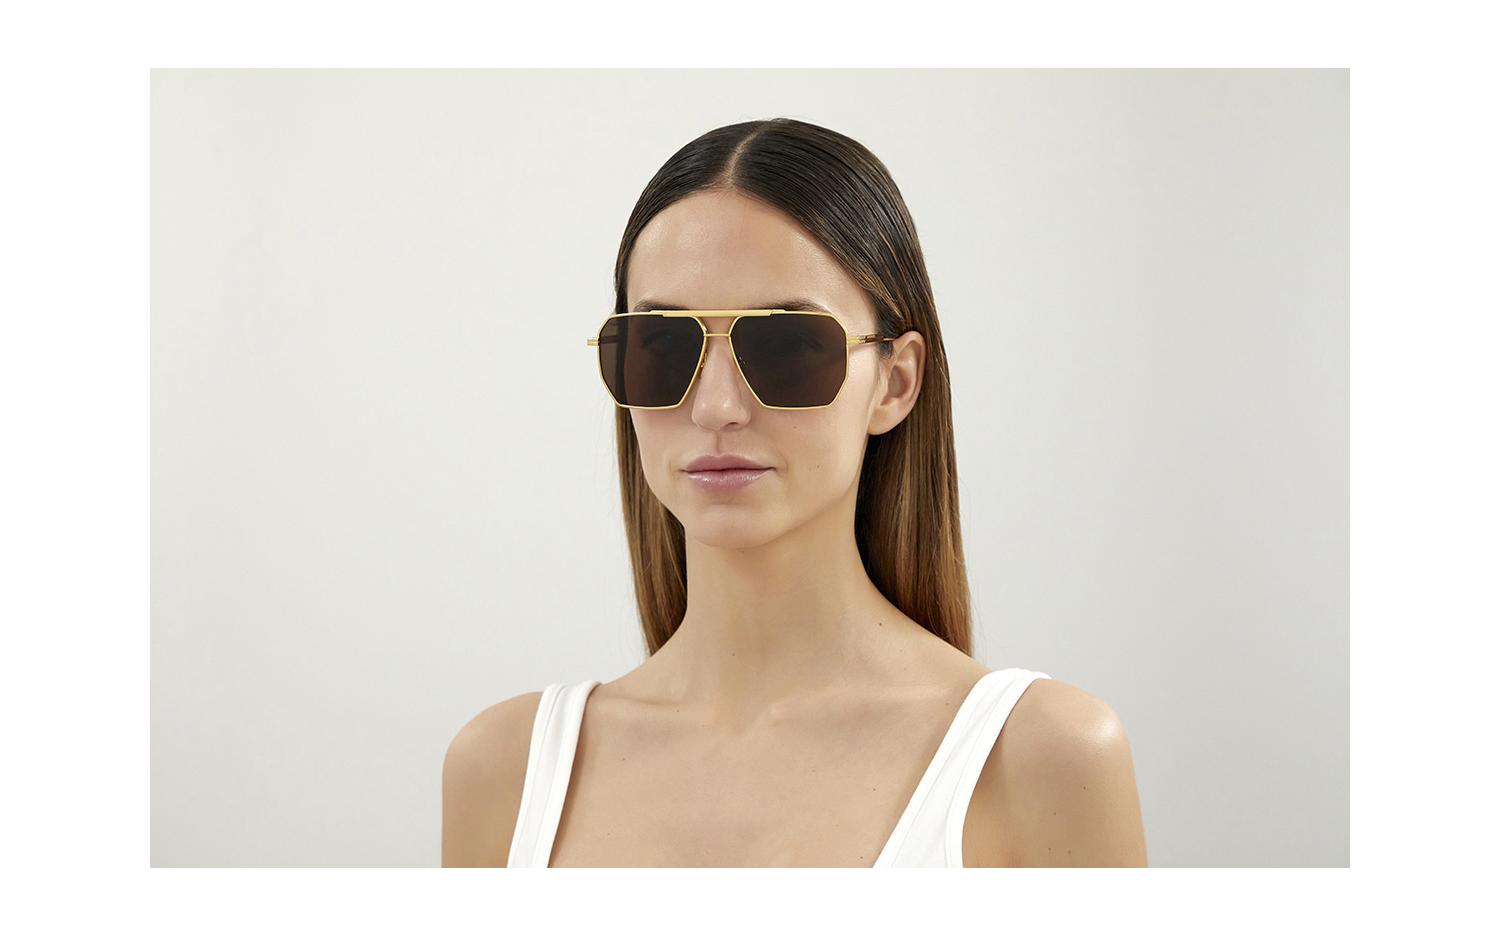 Find] Bottega Veneta glasses : r/FashionReps